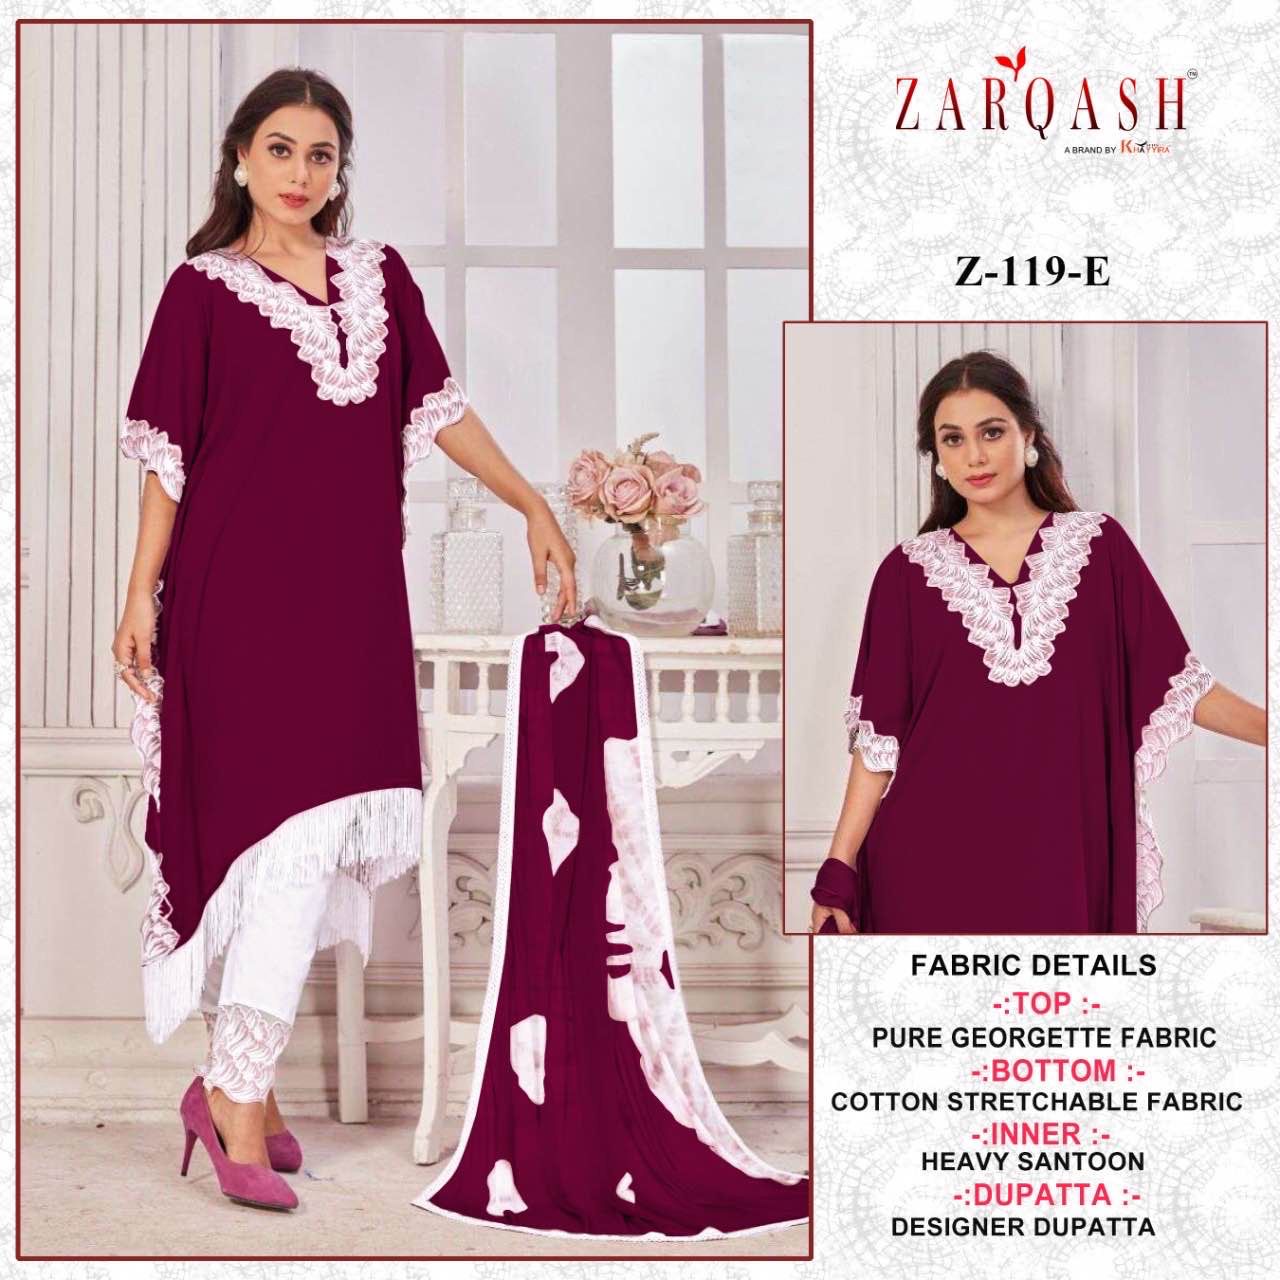 Zarqash Ready Made Collection Z-119-E